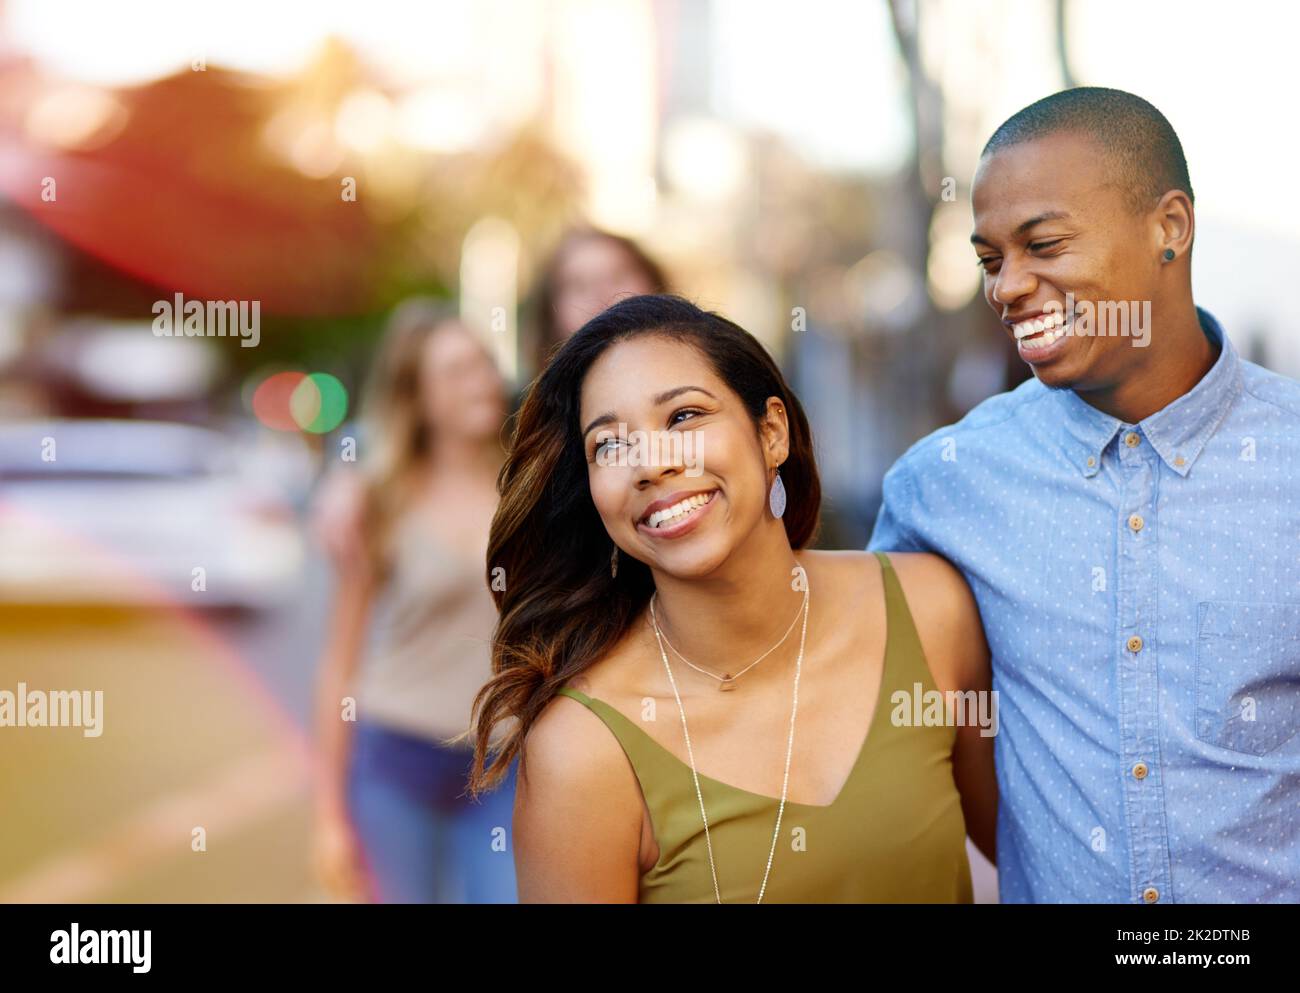 Die süßesten Tage der Liebe. Aufnahme von zwei glücklichen jungen Paaren, die einen Spaziergang durch die Stadt machen. Stockfoto